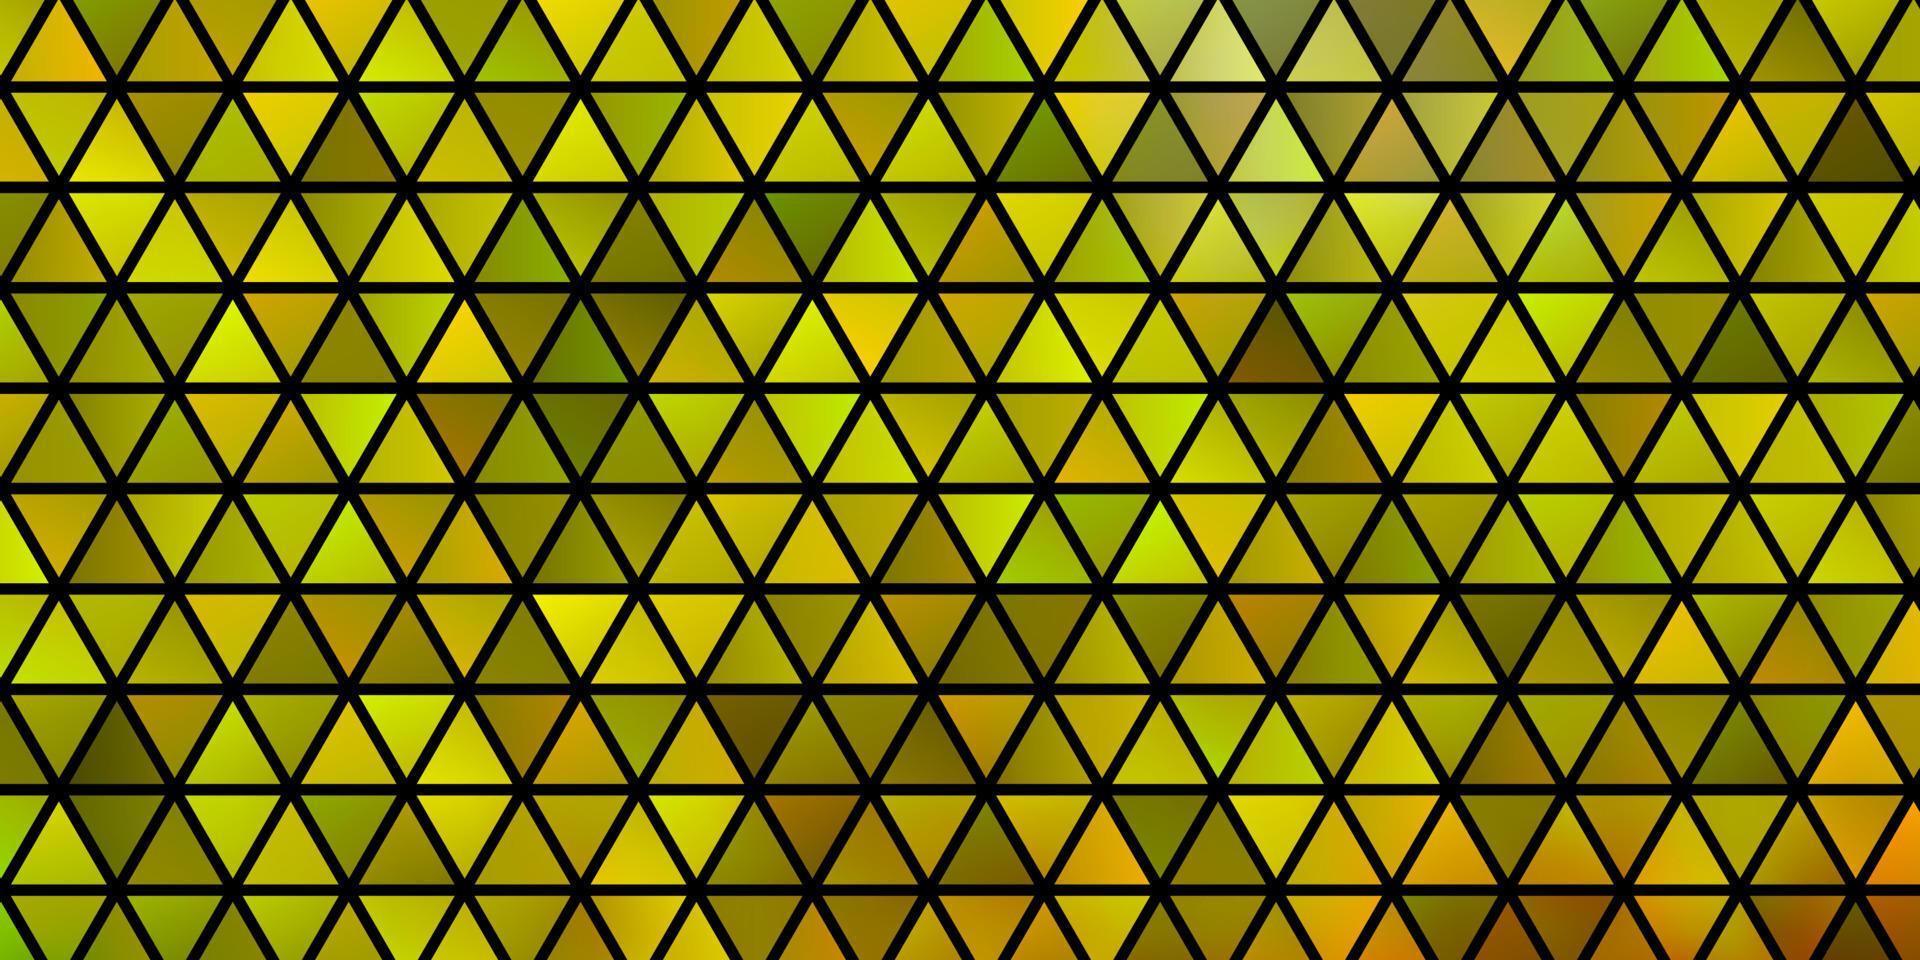 padrão de vetor vermelho e amarelo claro com estilo poligonal.